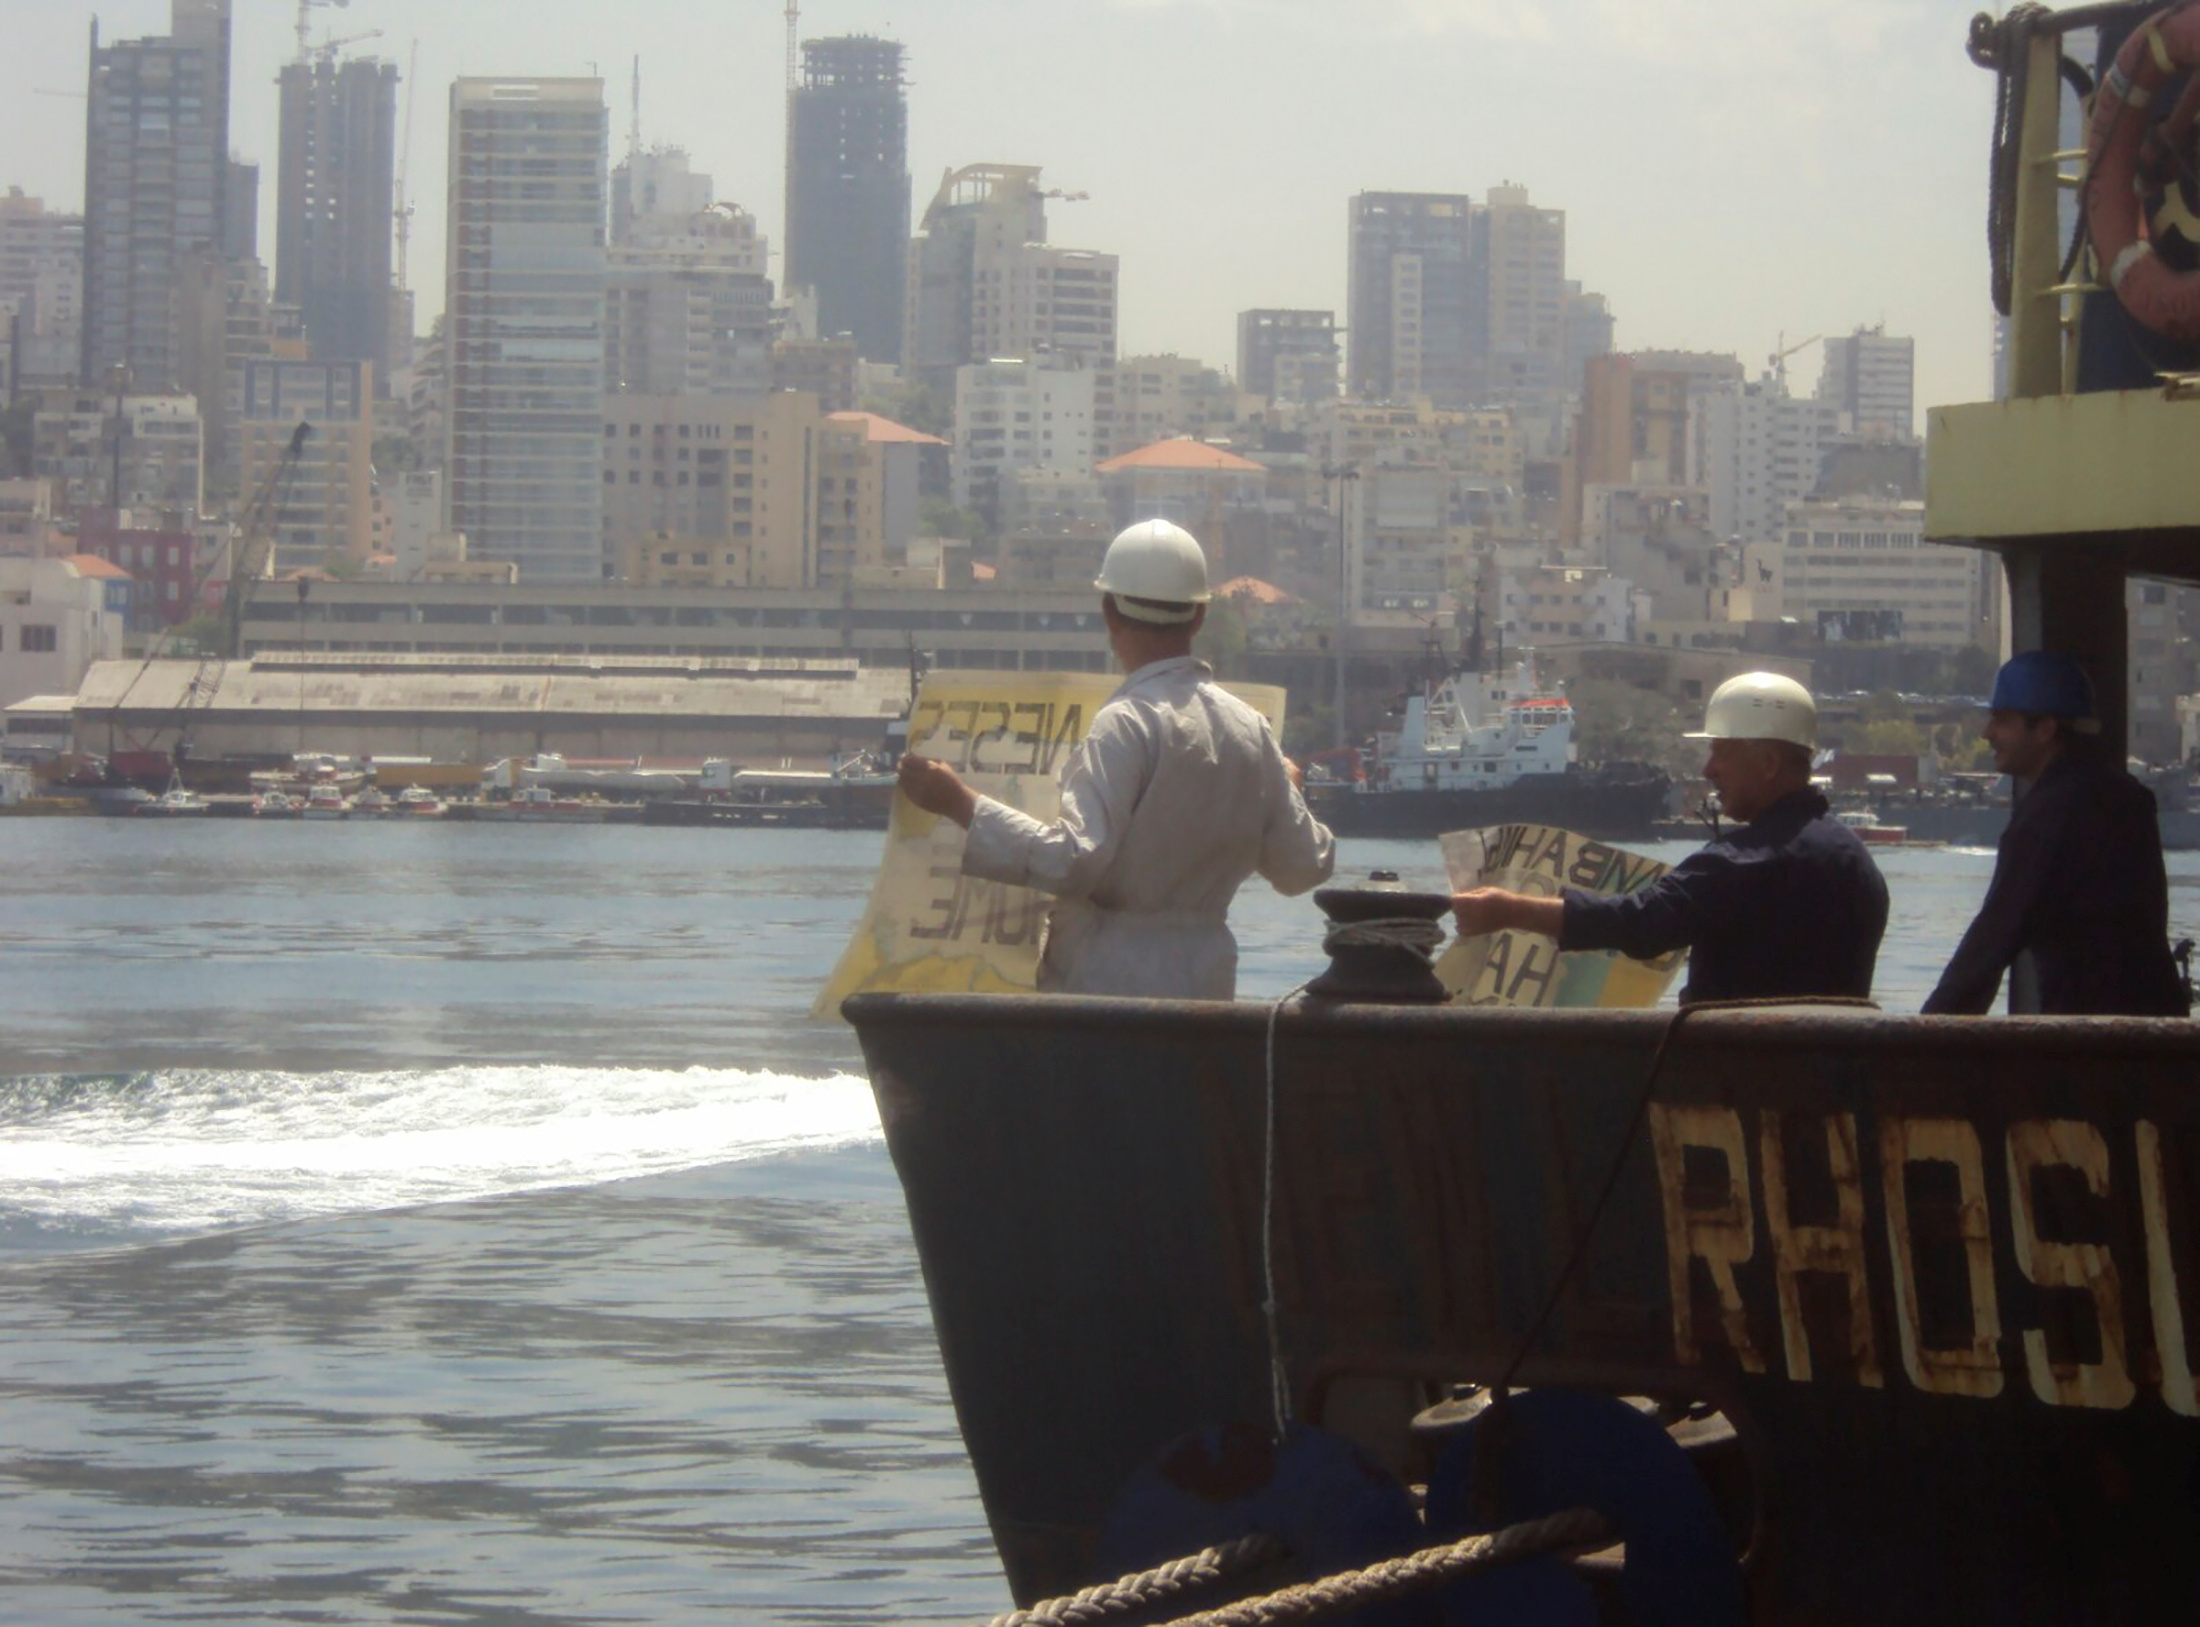 Liban: Le bateau incriminé ne devait pas aller à Beyrouth, dit son capitaine